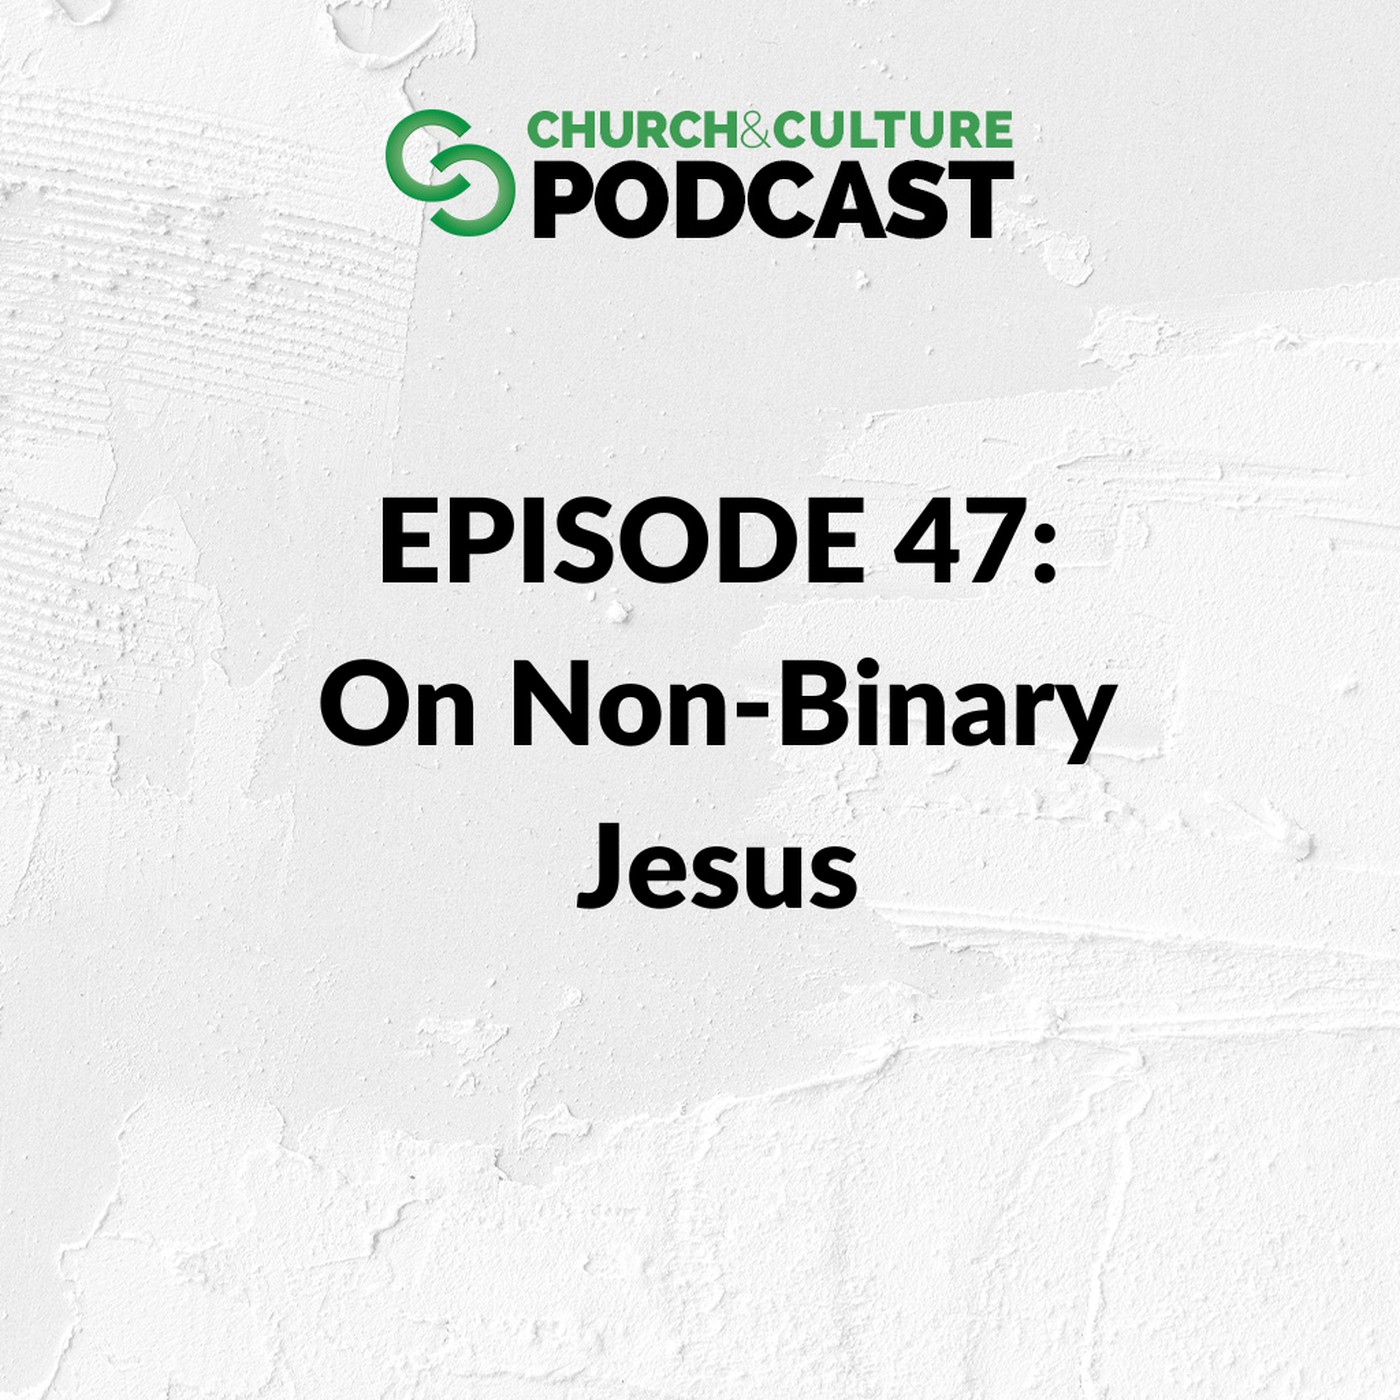 Church & Culture Podcast